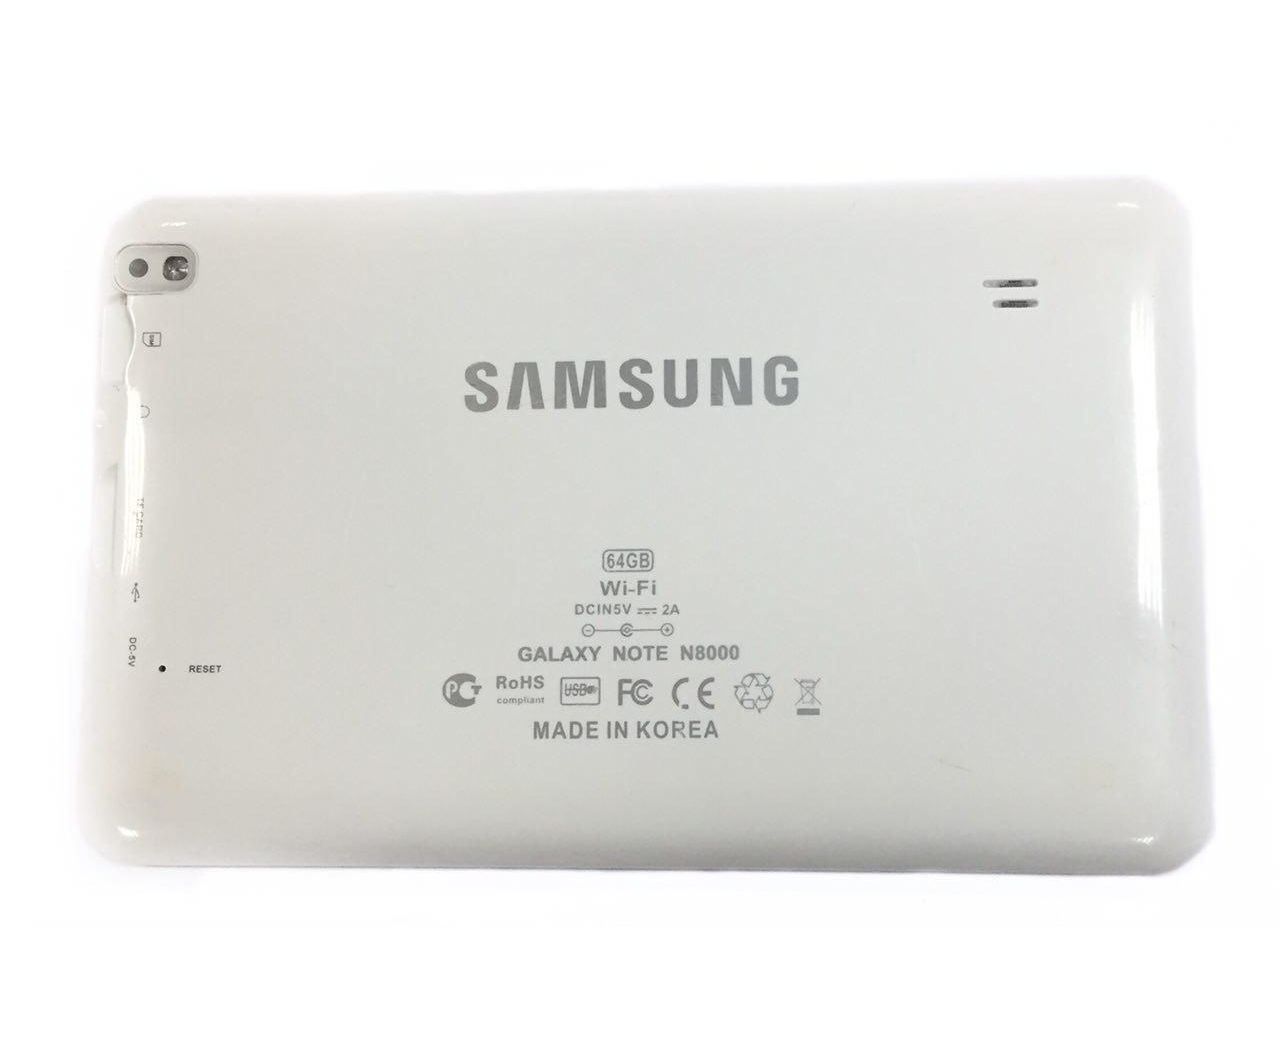 Galaxy note 8000. Samsung Galaxy Note n8000. Samsung Galaxy Note 10.1 n8000. Планшет Samsung Galaxy Note 8000. Samsung Galaxy Note 8000 64gb.